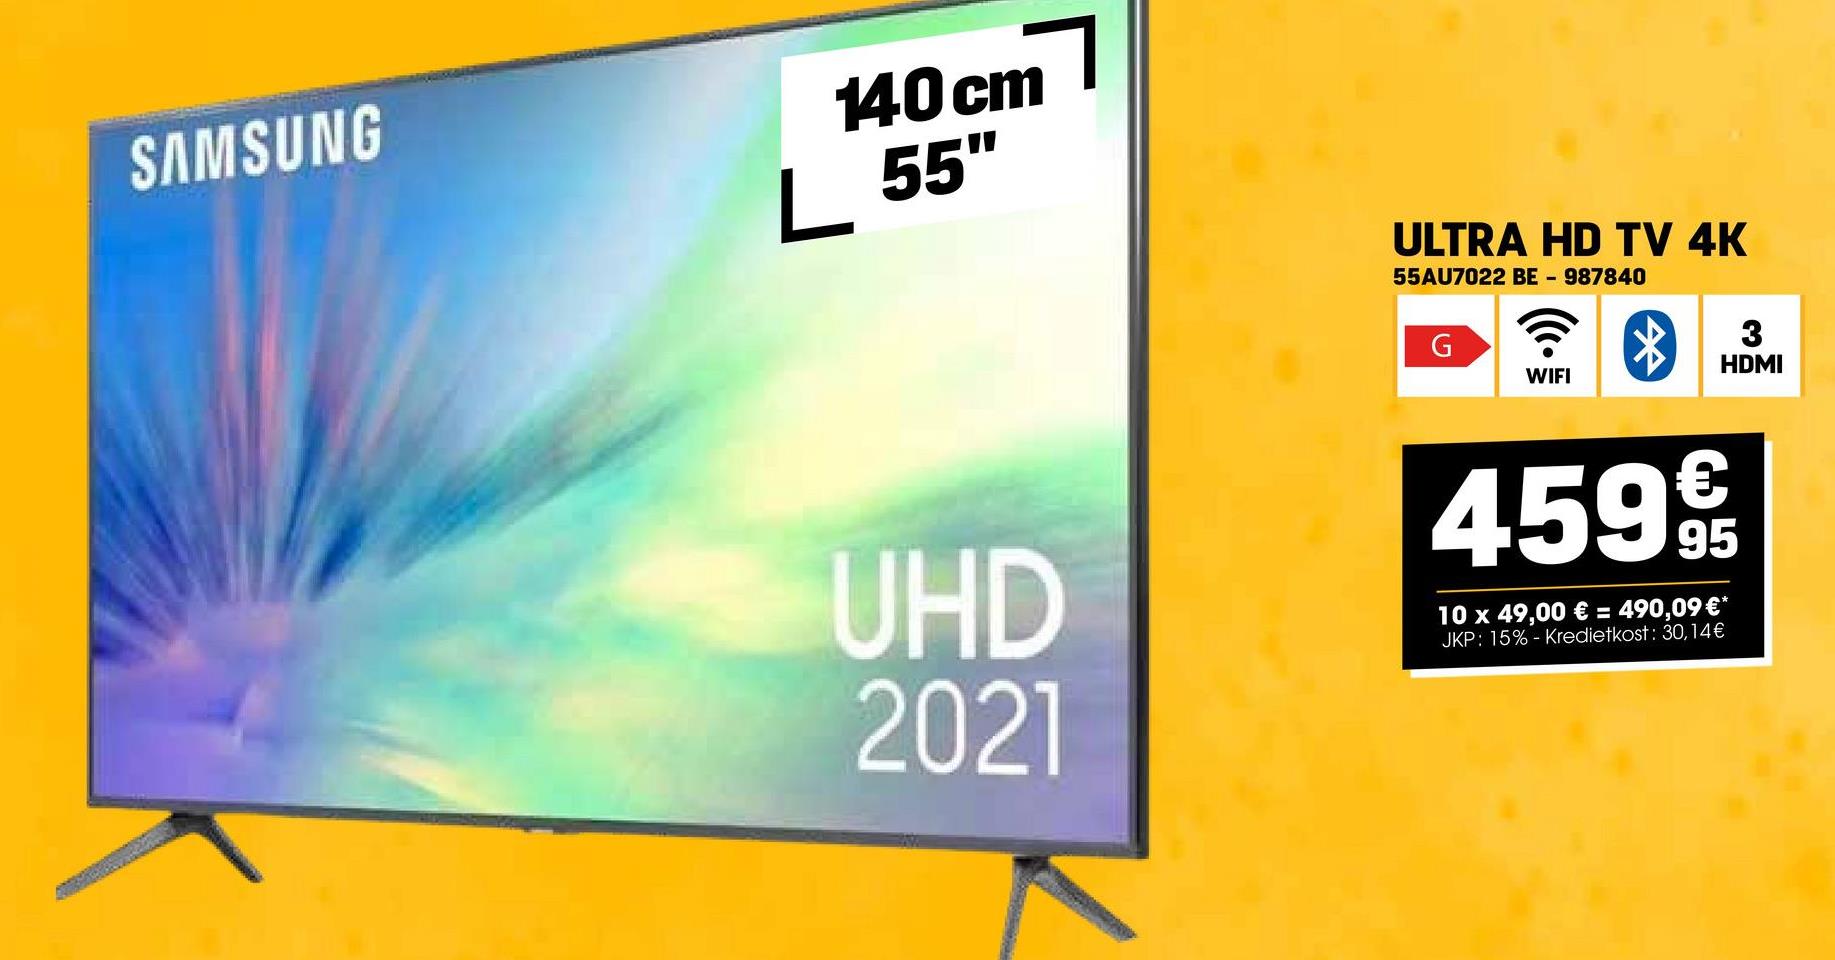 Г.
SAMSUNG
140cm
L 55"
ULTRA HD TV 4K
55AU7022 BE-987840
G
WIFI
3
HDMI
UHD
2021
4599€
10 x 49,00 € = 490,09 €*
JKP: 15%- Kredietkost: 30,14€